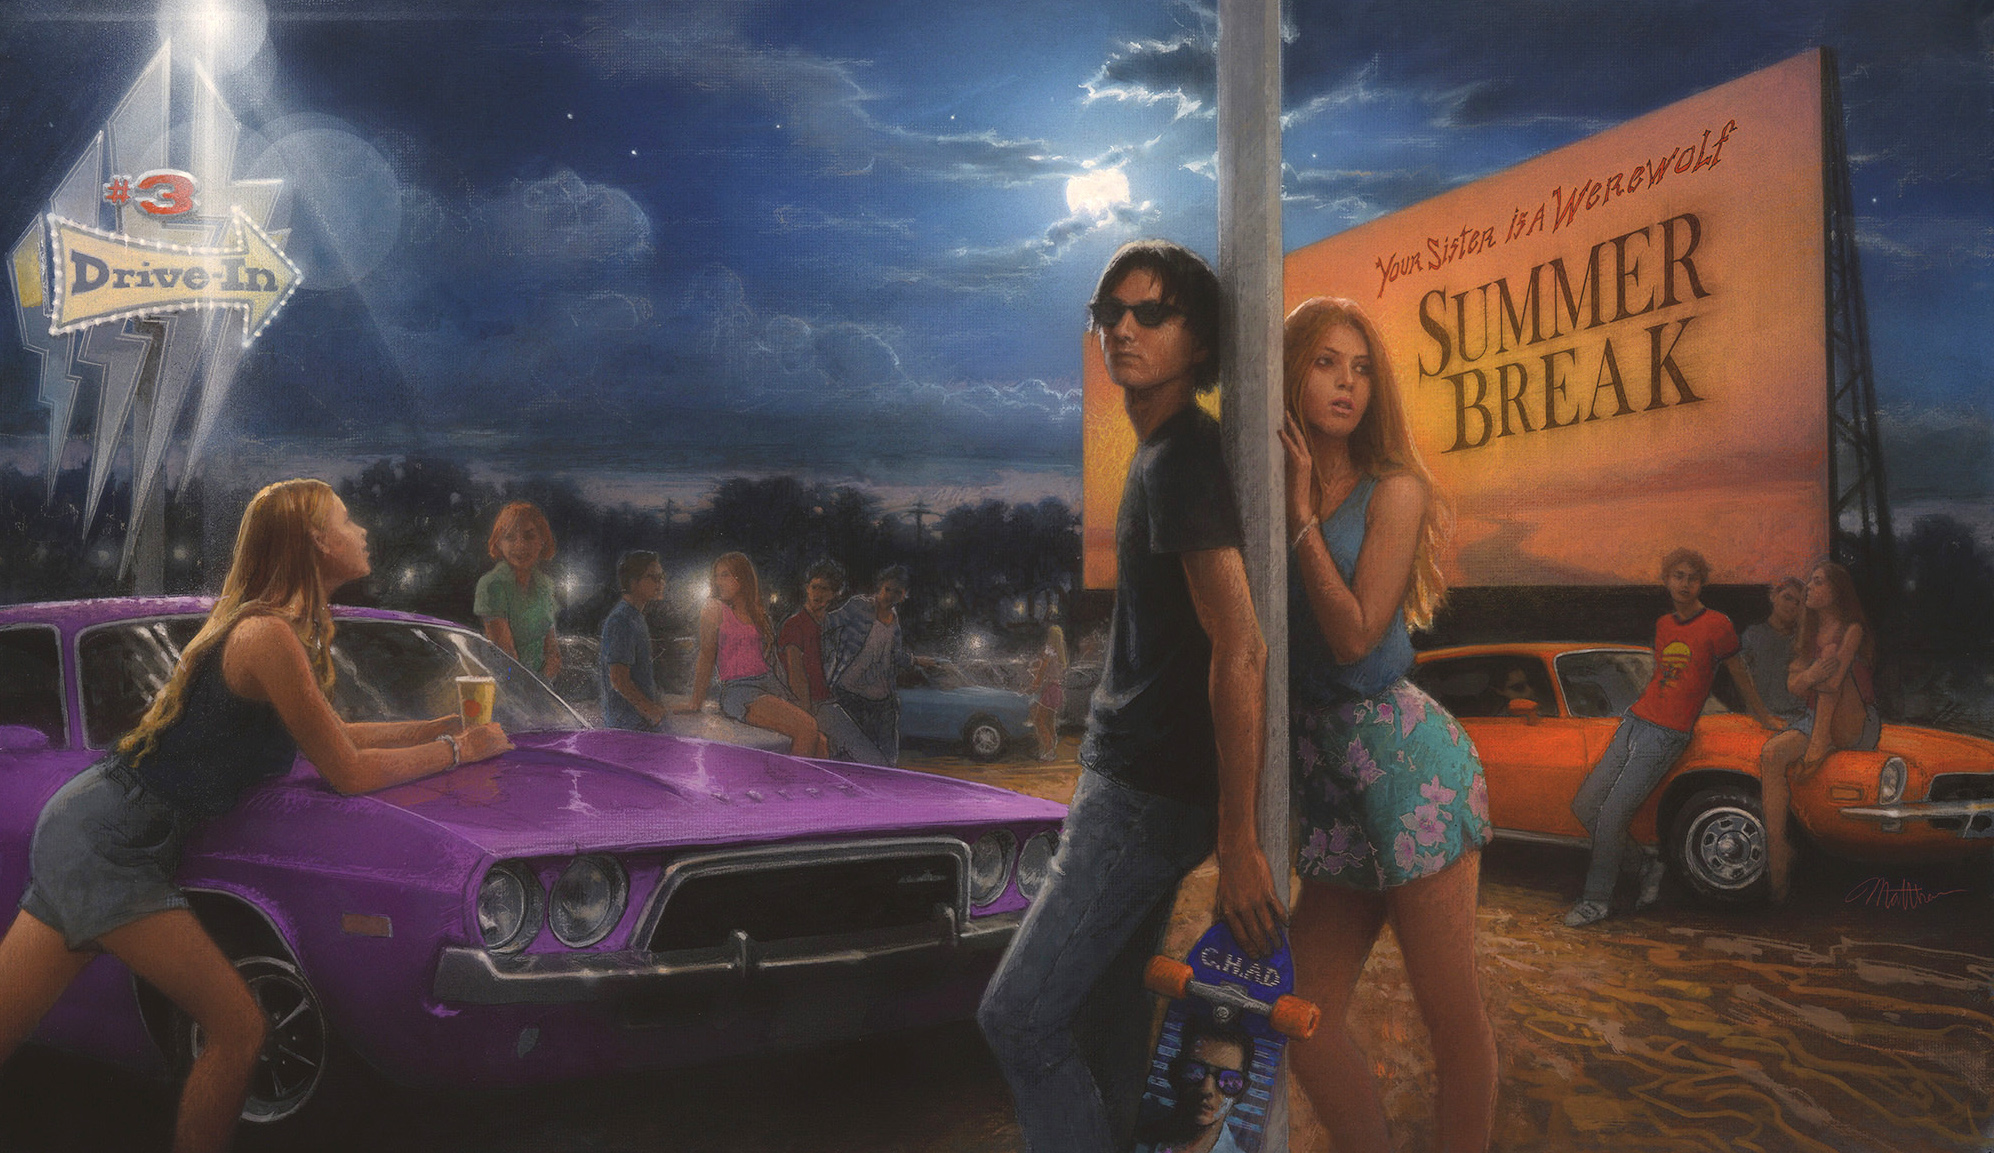 “Summer Break” album cover